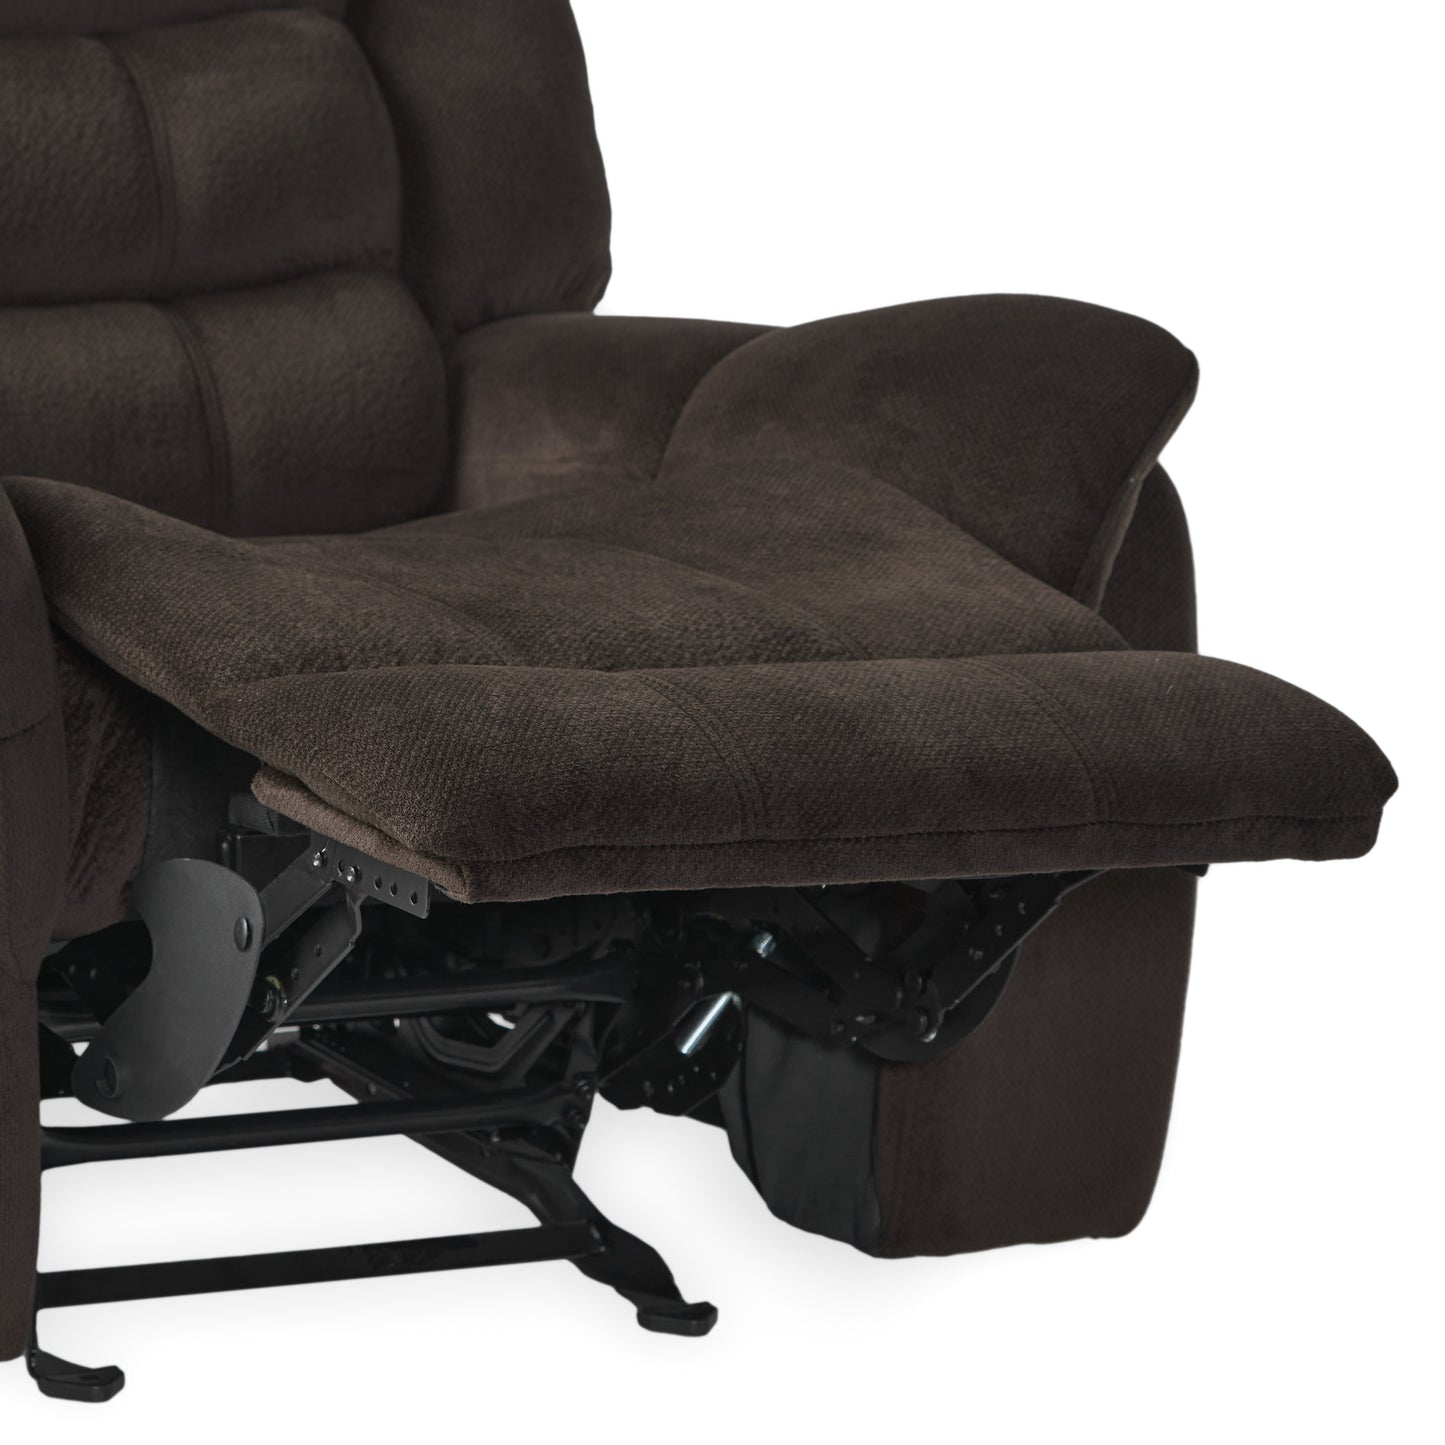 Hidal Brown Fabric Glider Recliner Club Chair